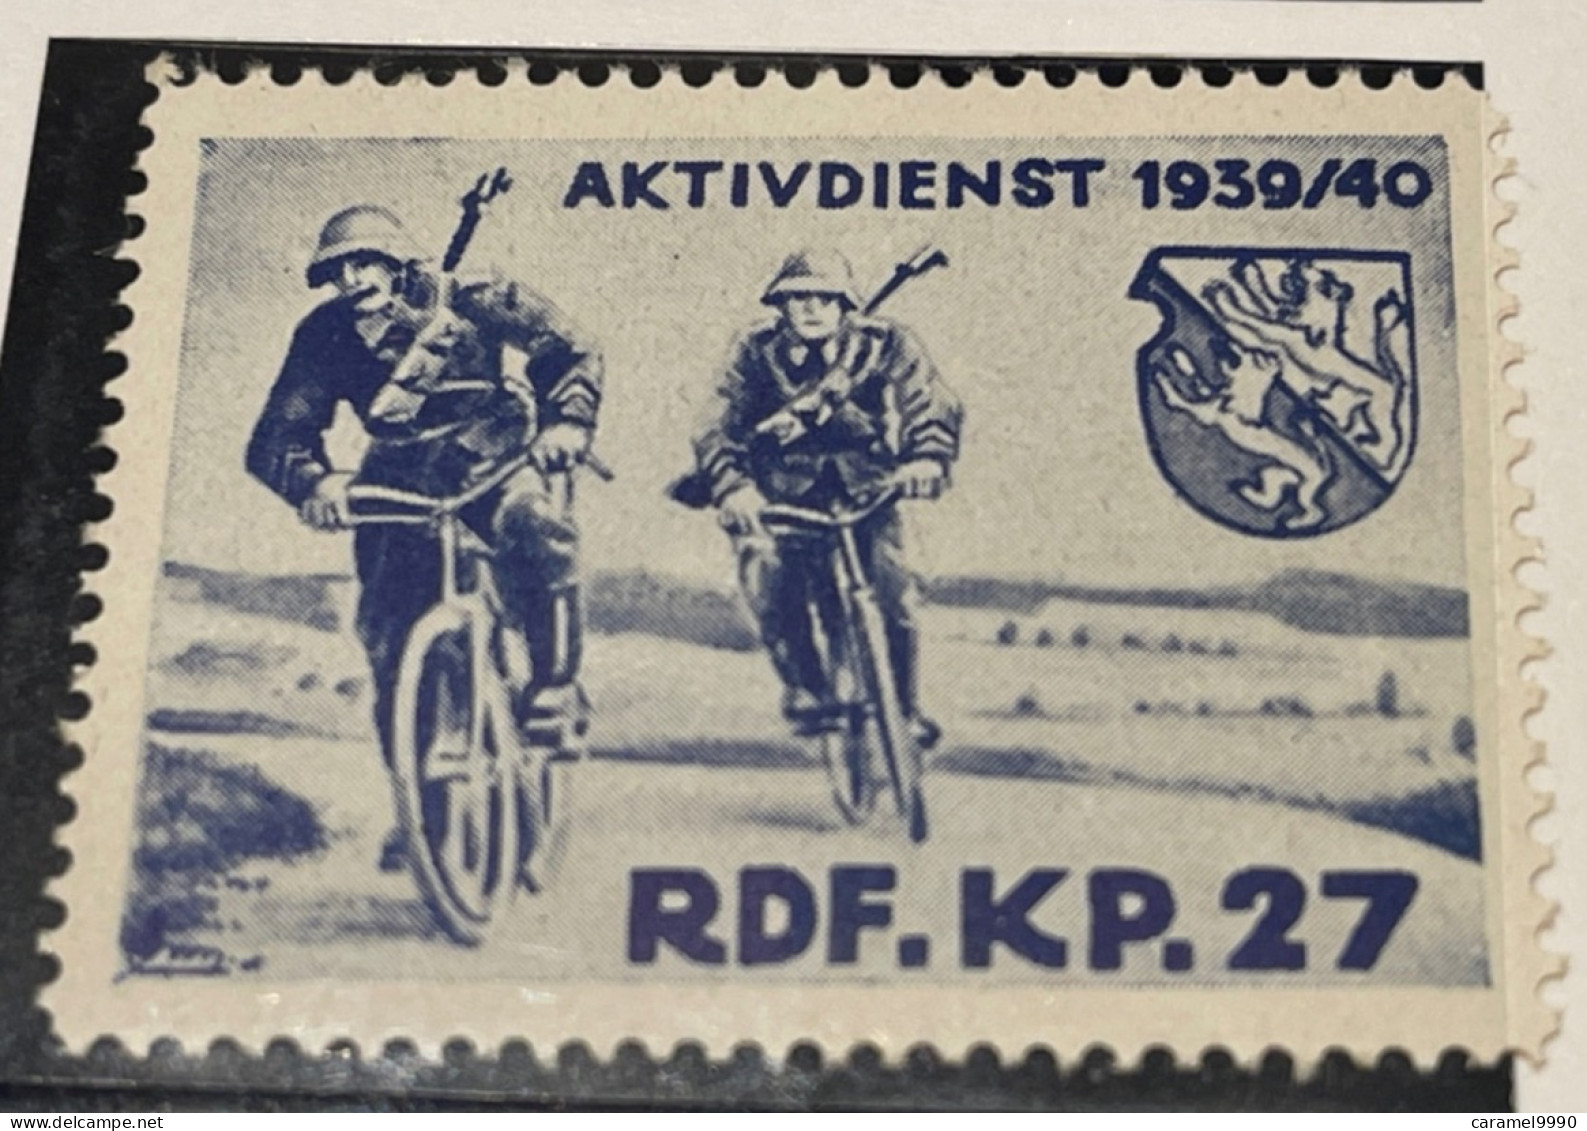 Schweiz Militaire Soldatenmarke RDF.  KP 27  1939- 1940 Aktivdienst Velo Cyclisme Bicycle Radfahren Z 18 - Vignettes